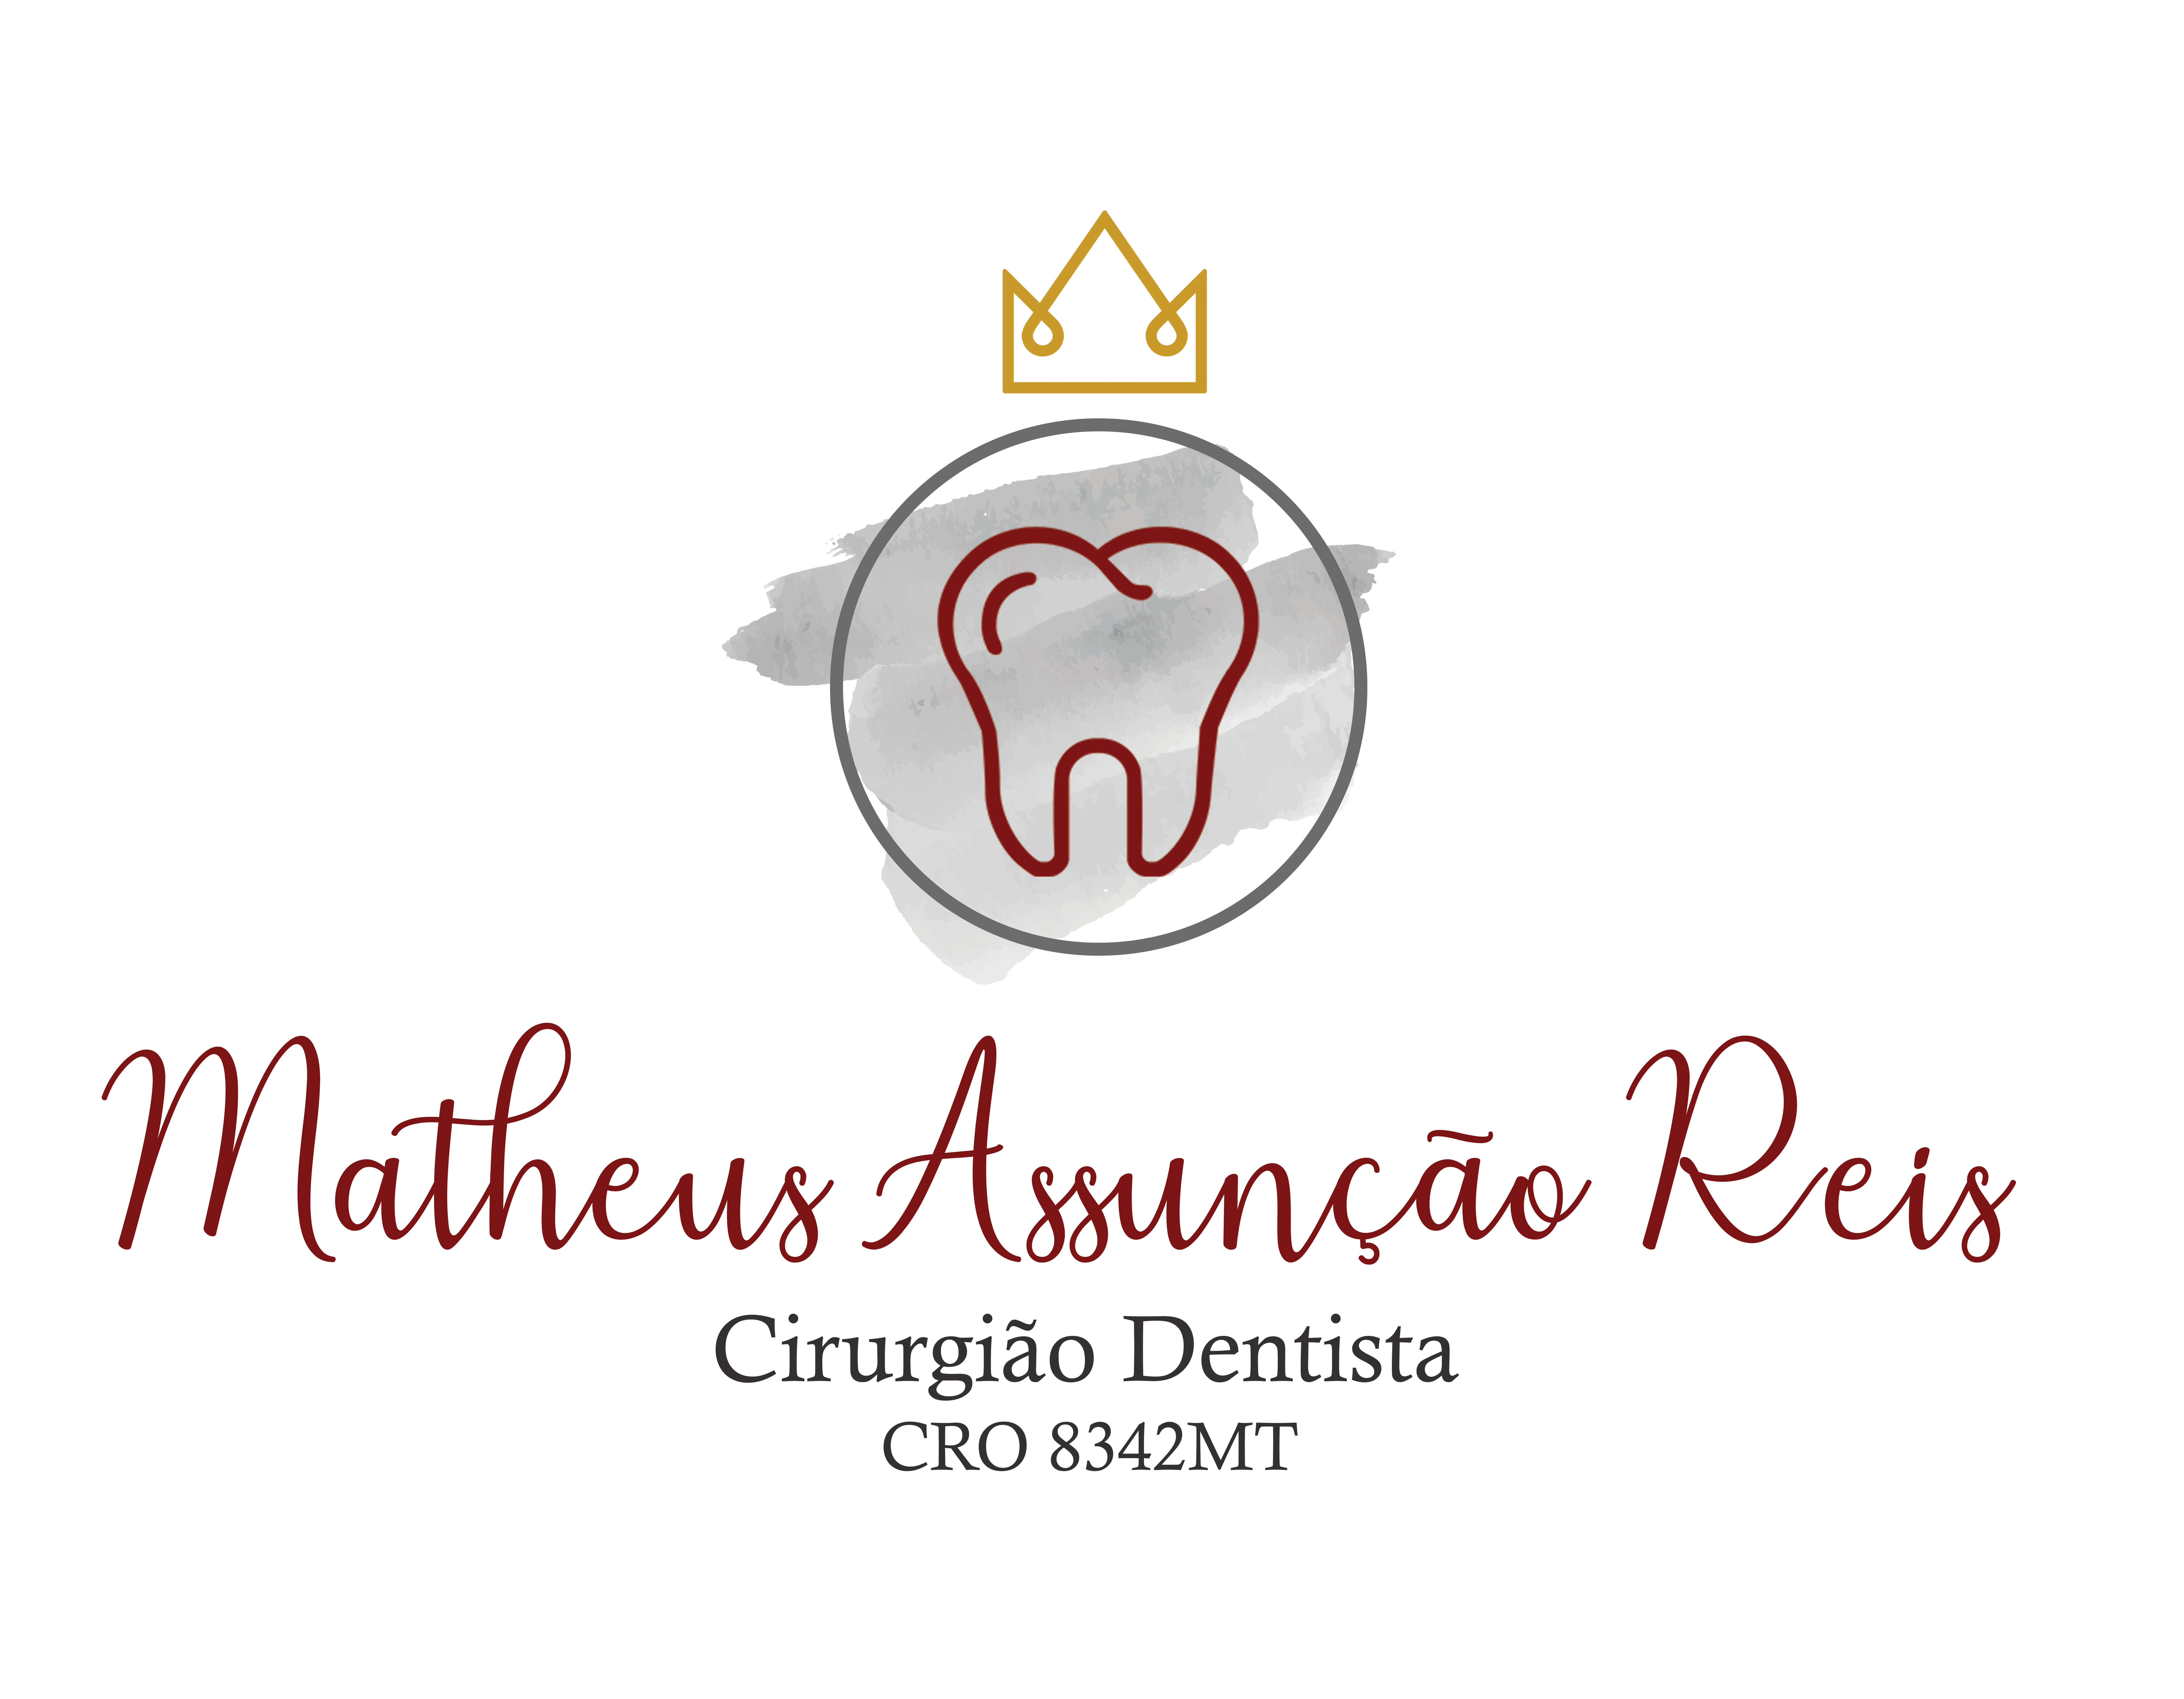 Matheus Reis Odontologia